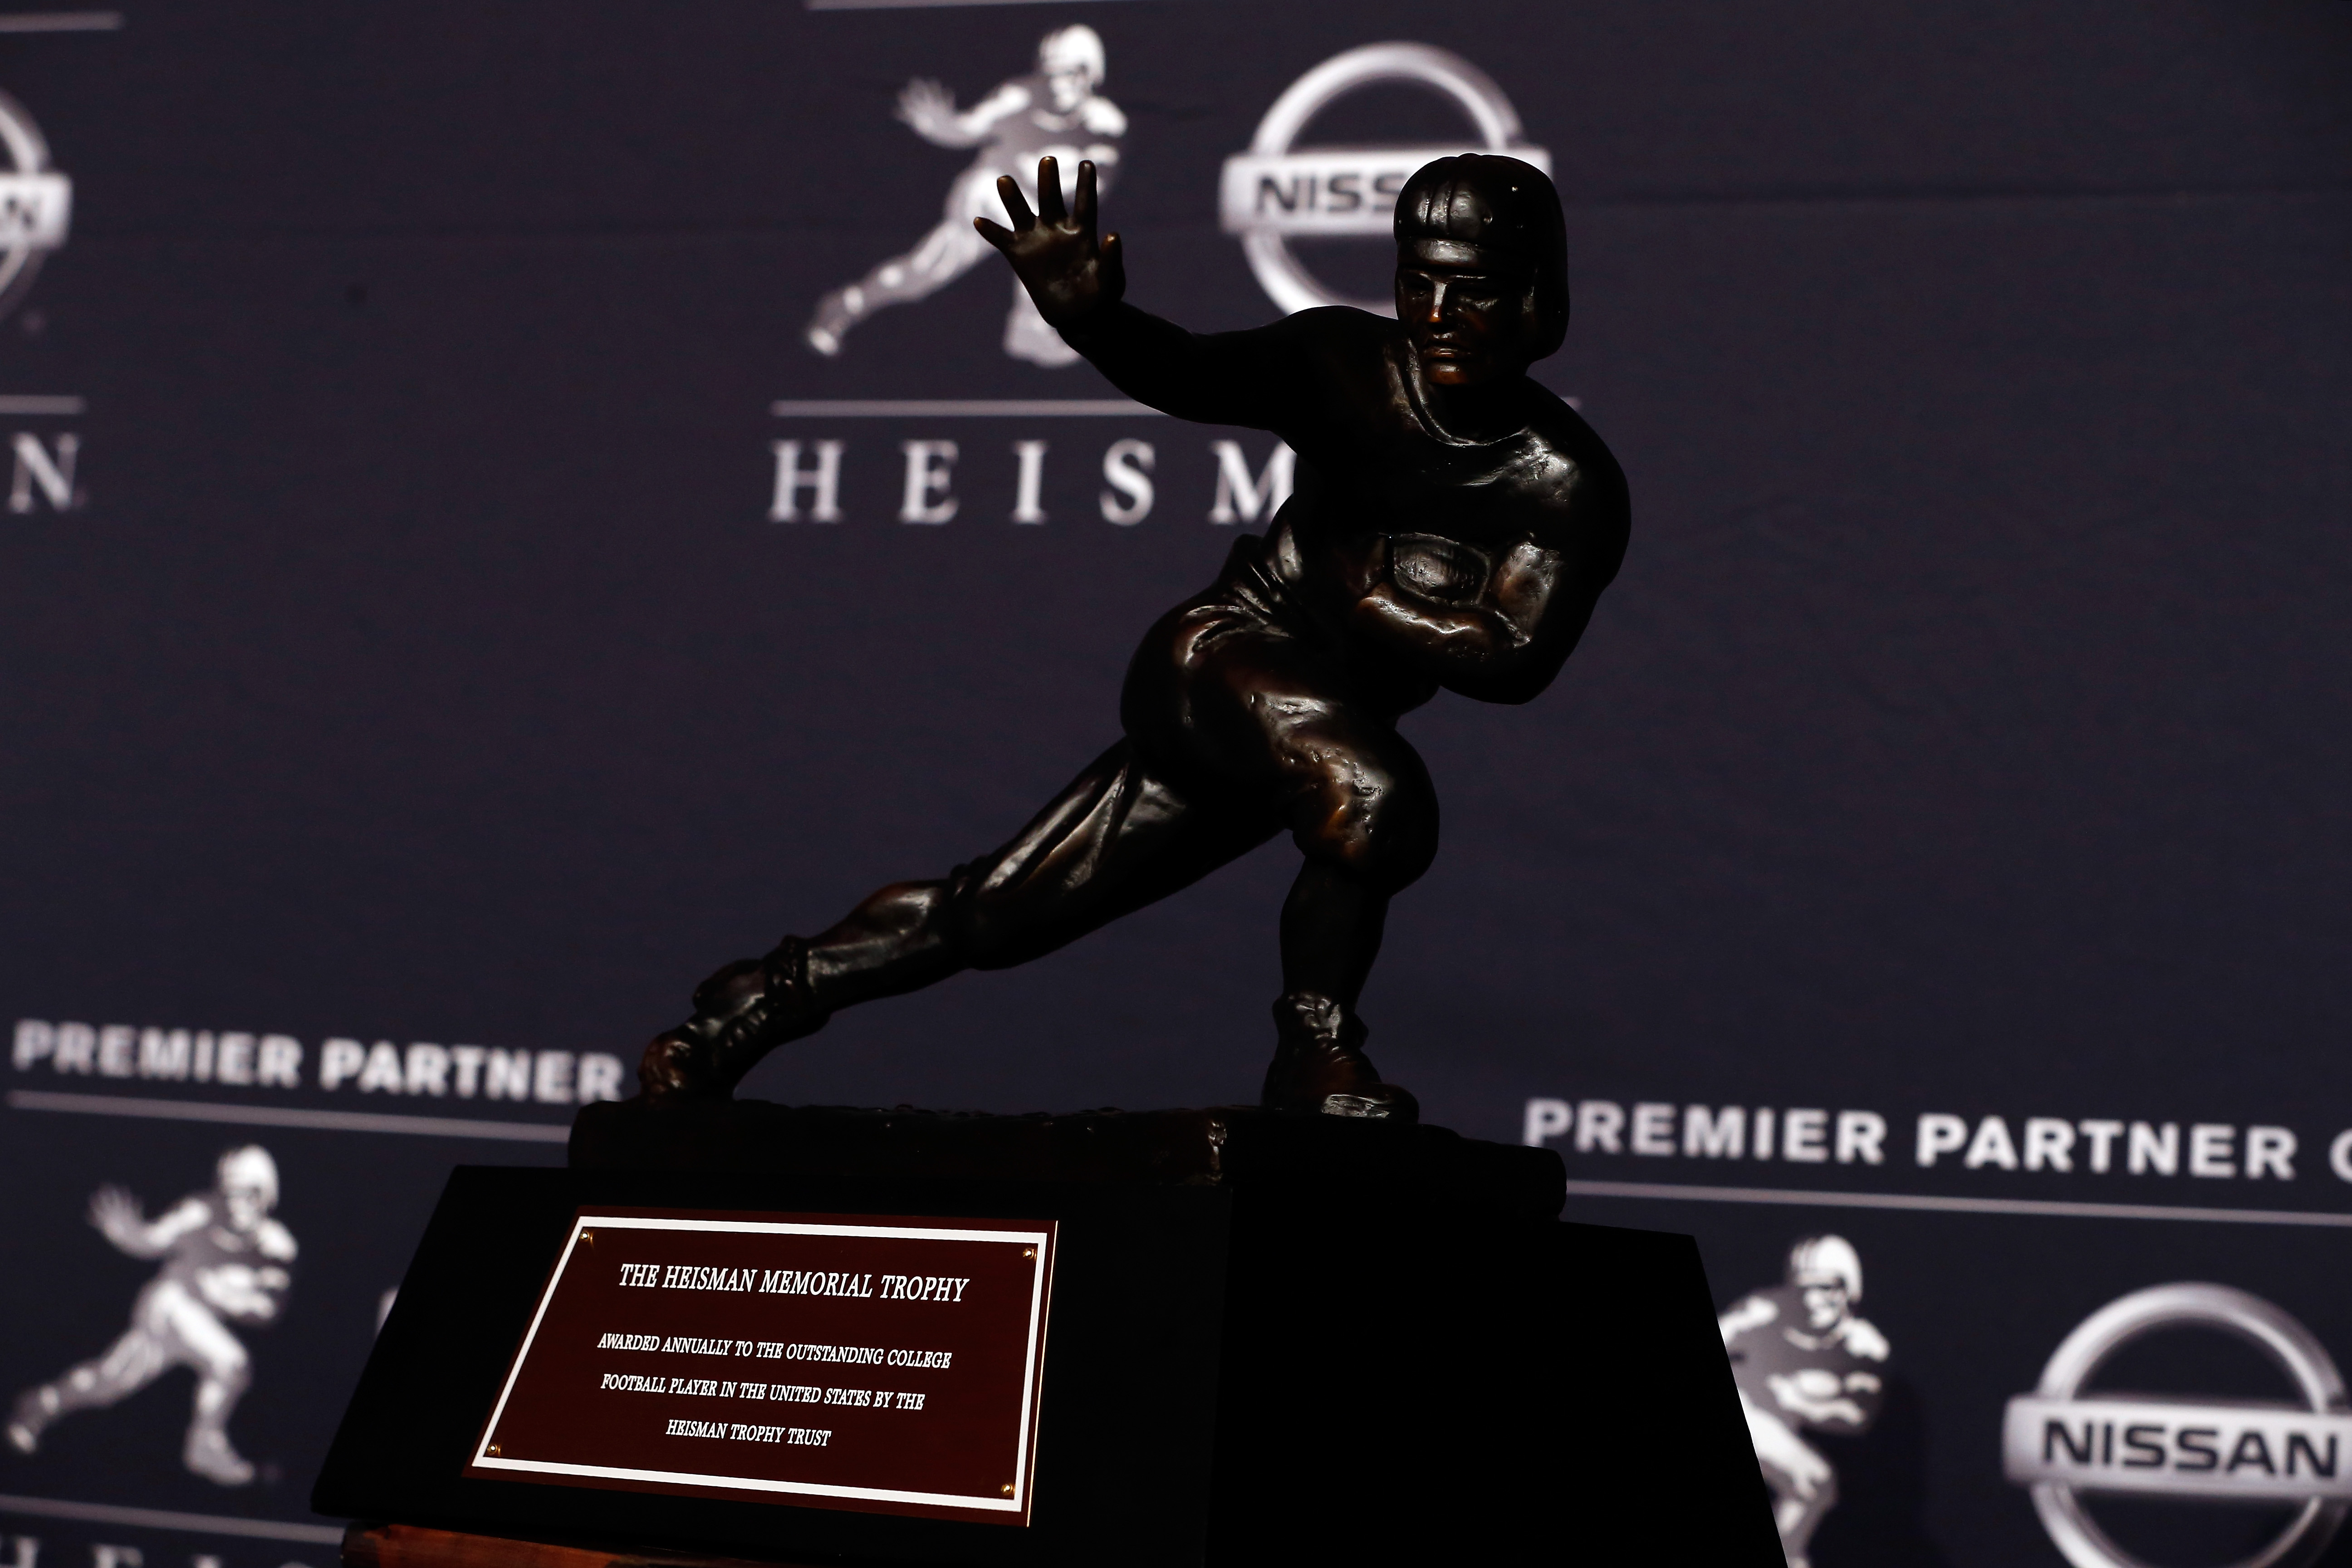 Heisman Trophy History & List of Past Winners